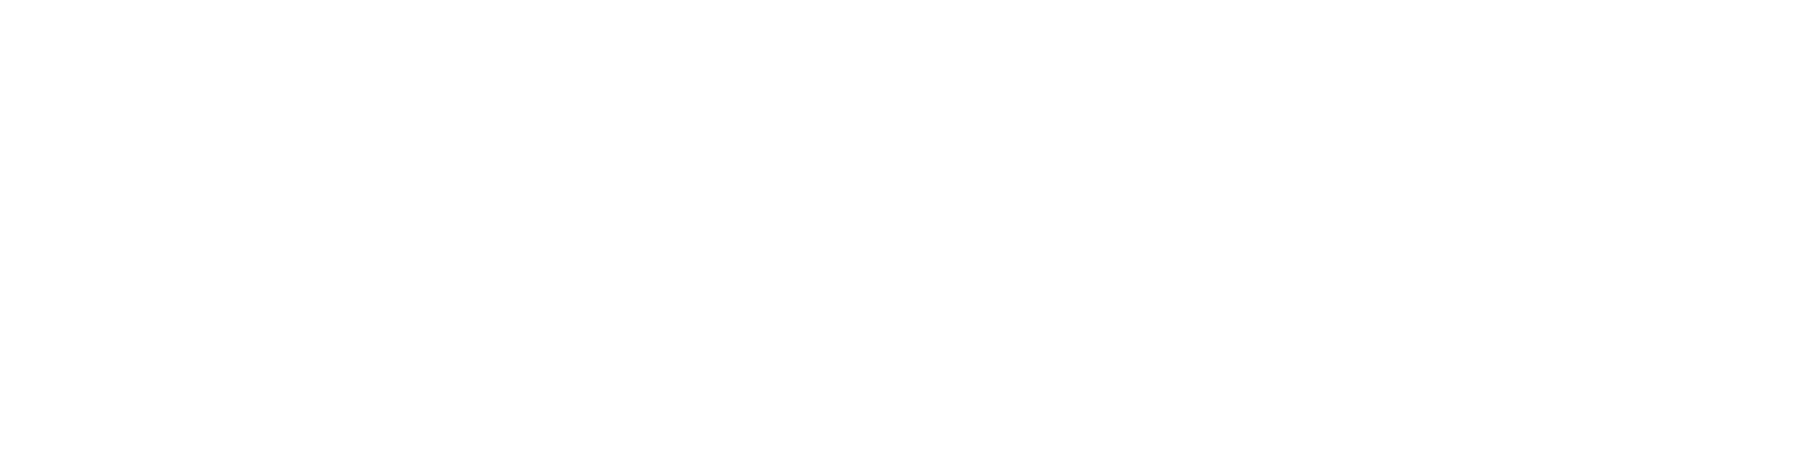 Modhaus wordmark logo